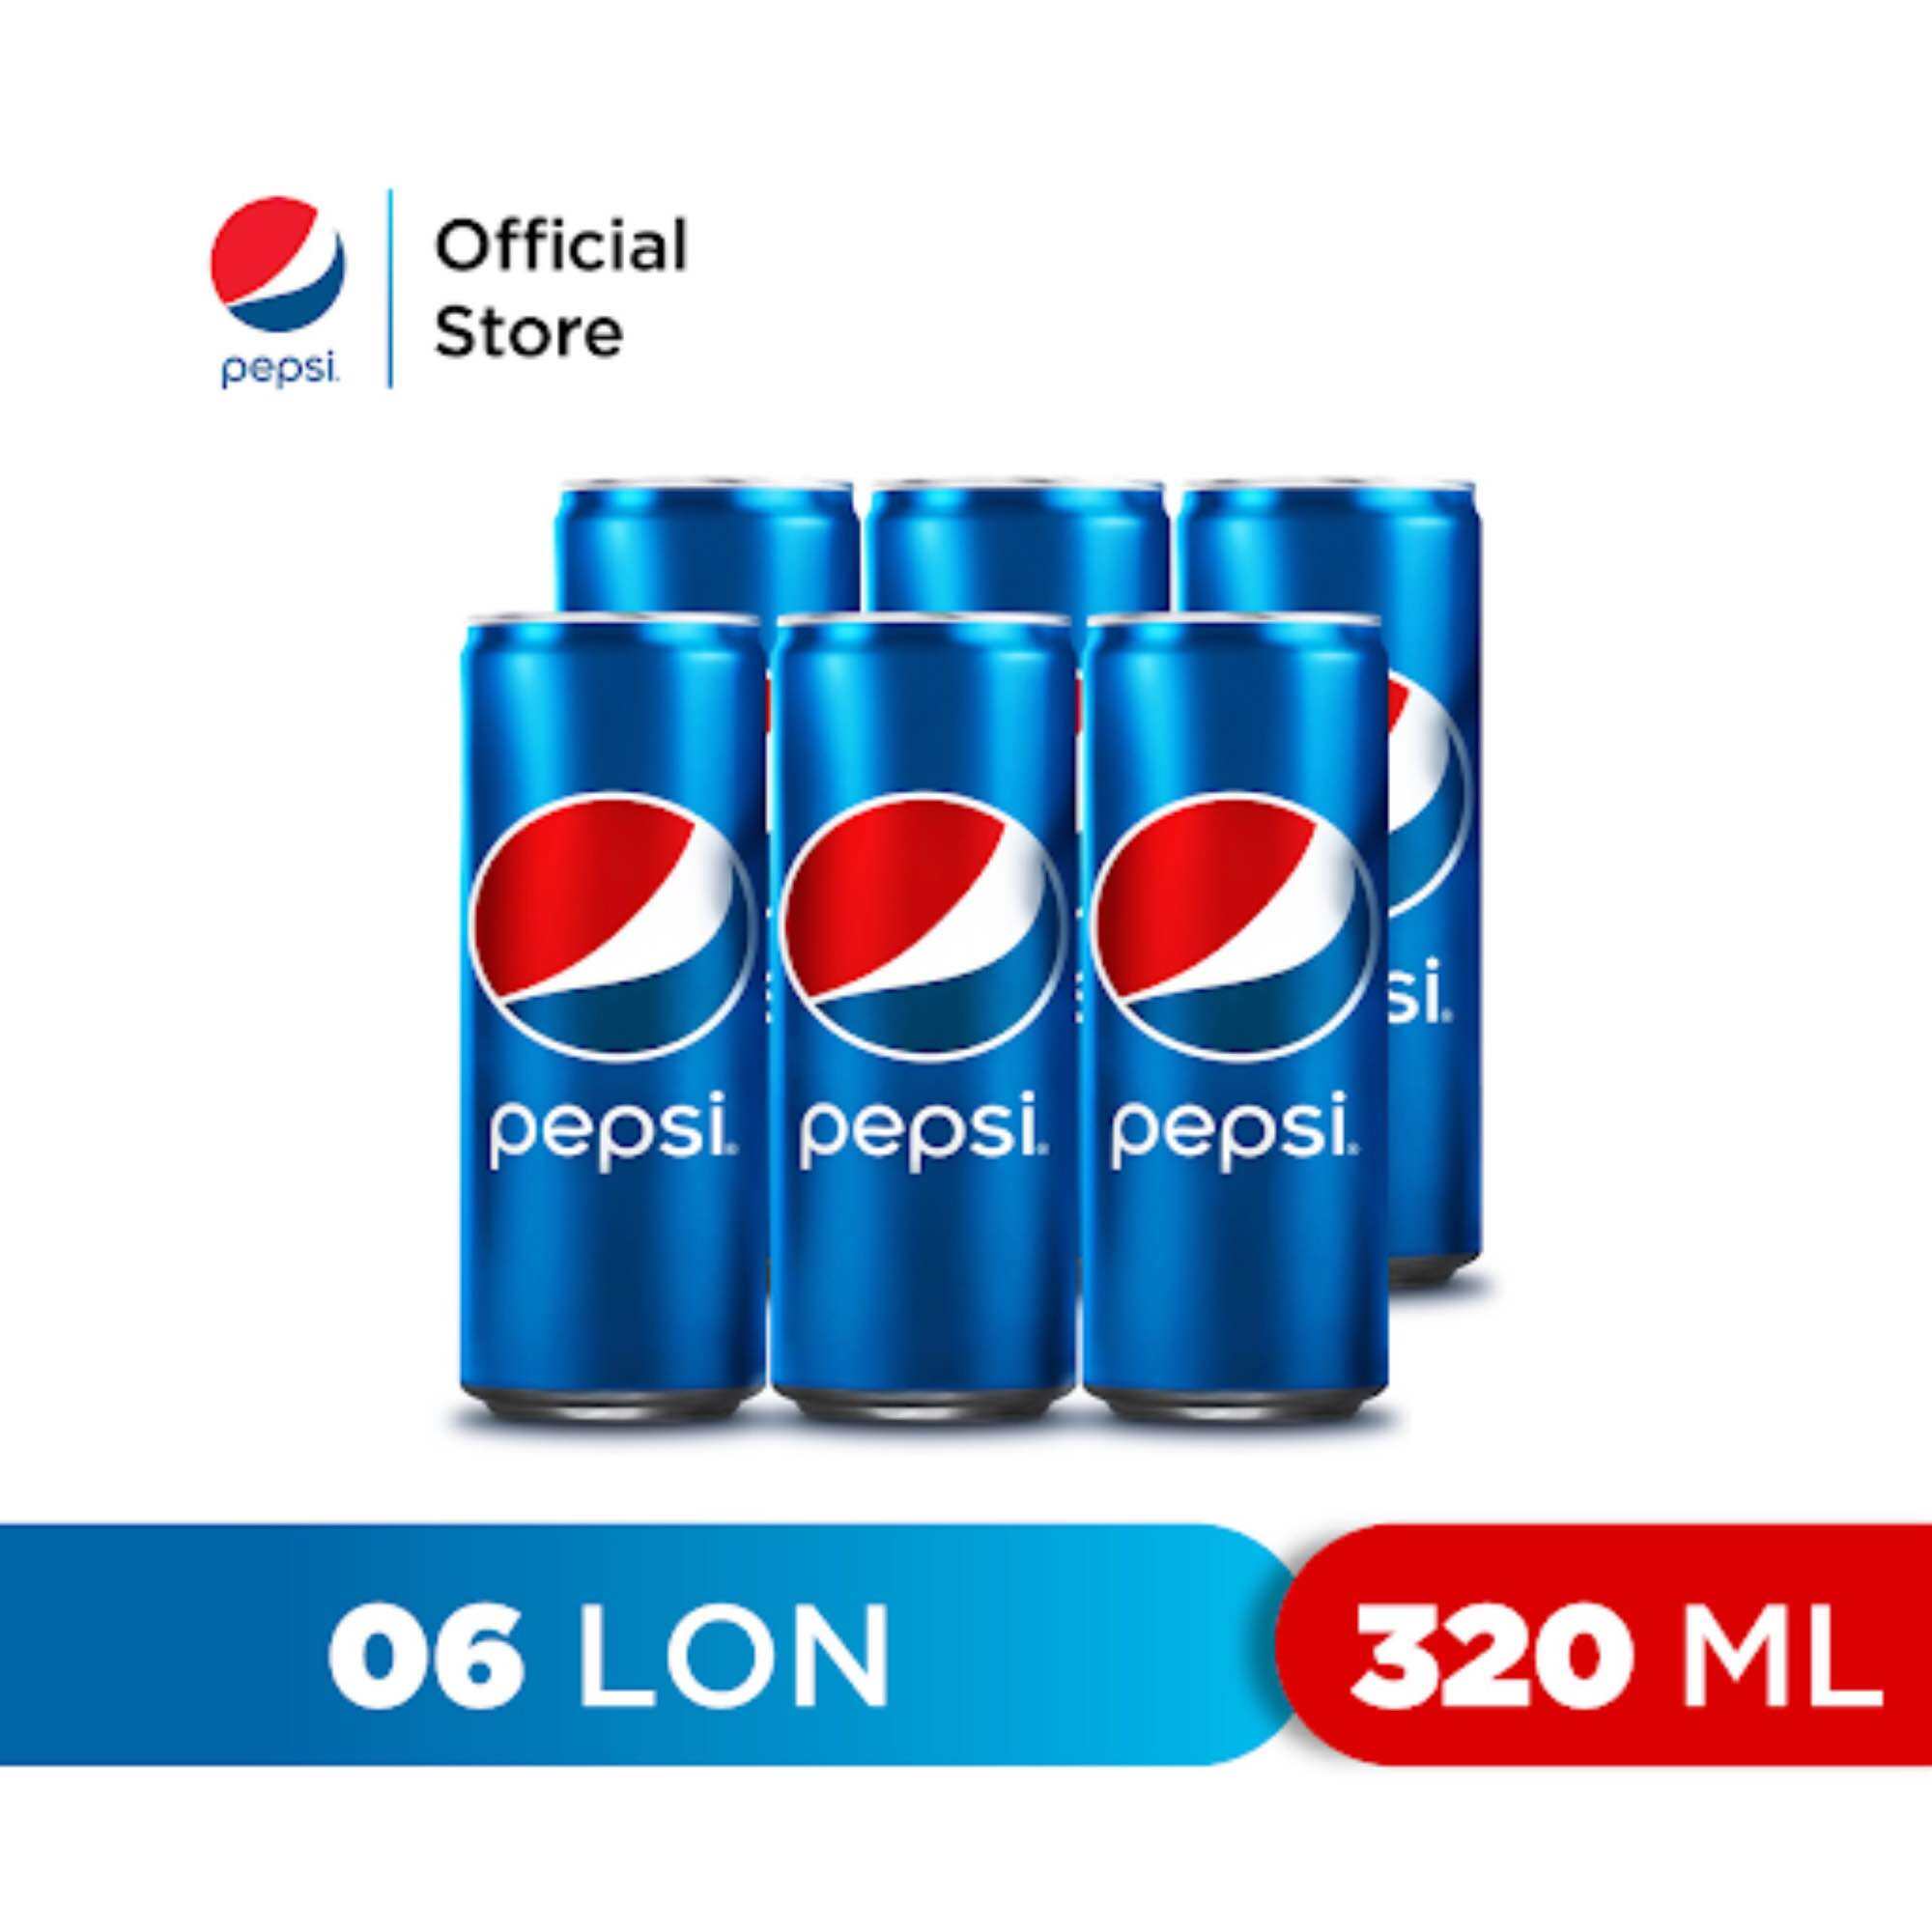 Pepsi 320Ml lốc 6 lon